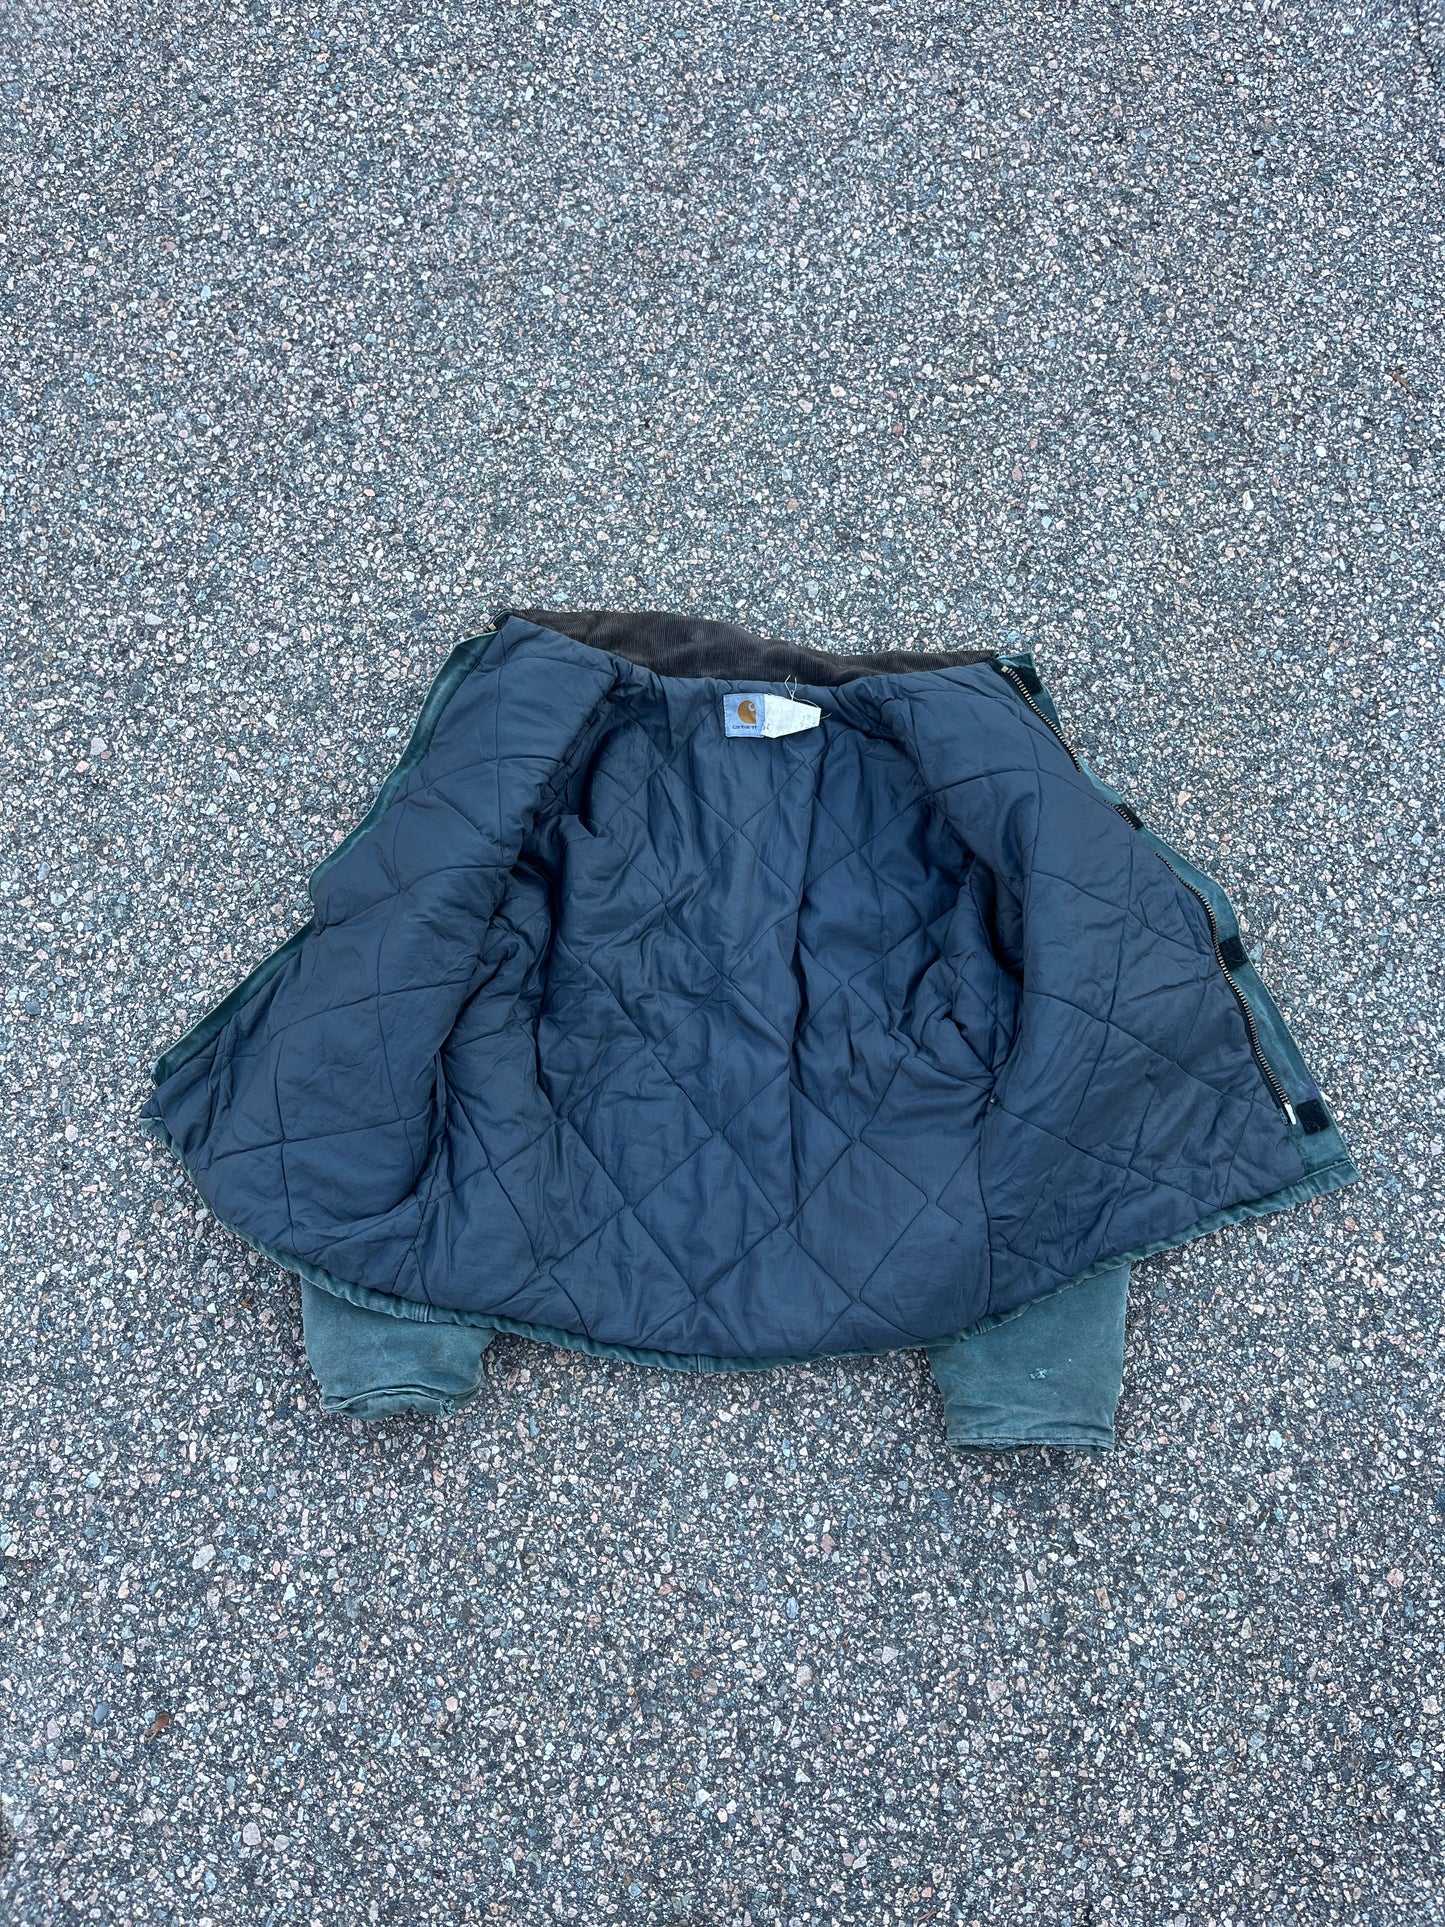 Faded Hunter Green Carhartt Arctic Jacket - Medium